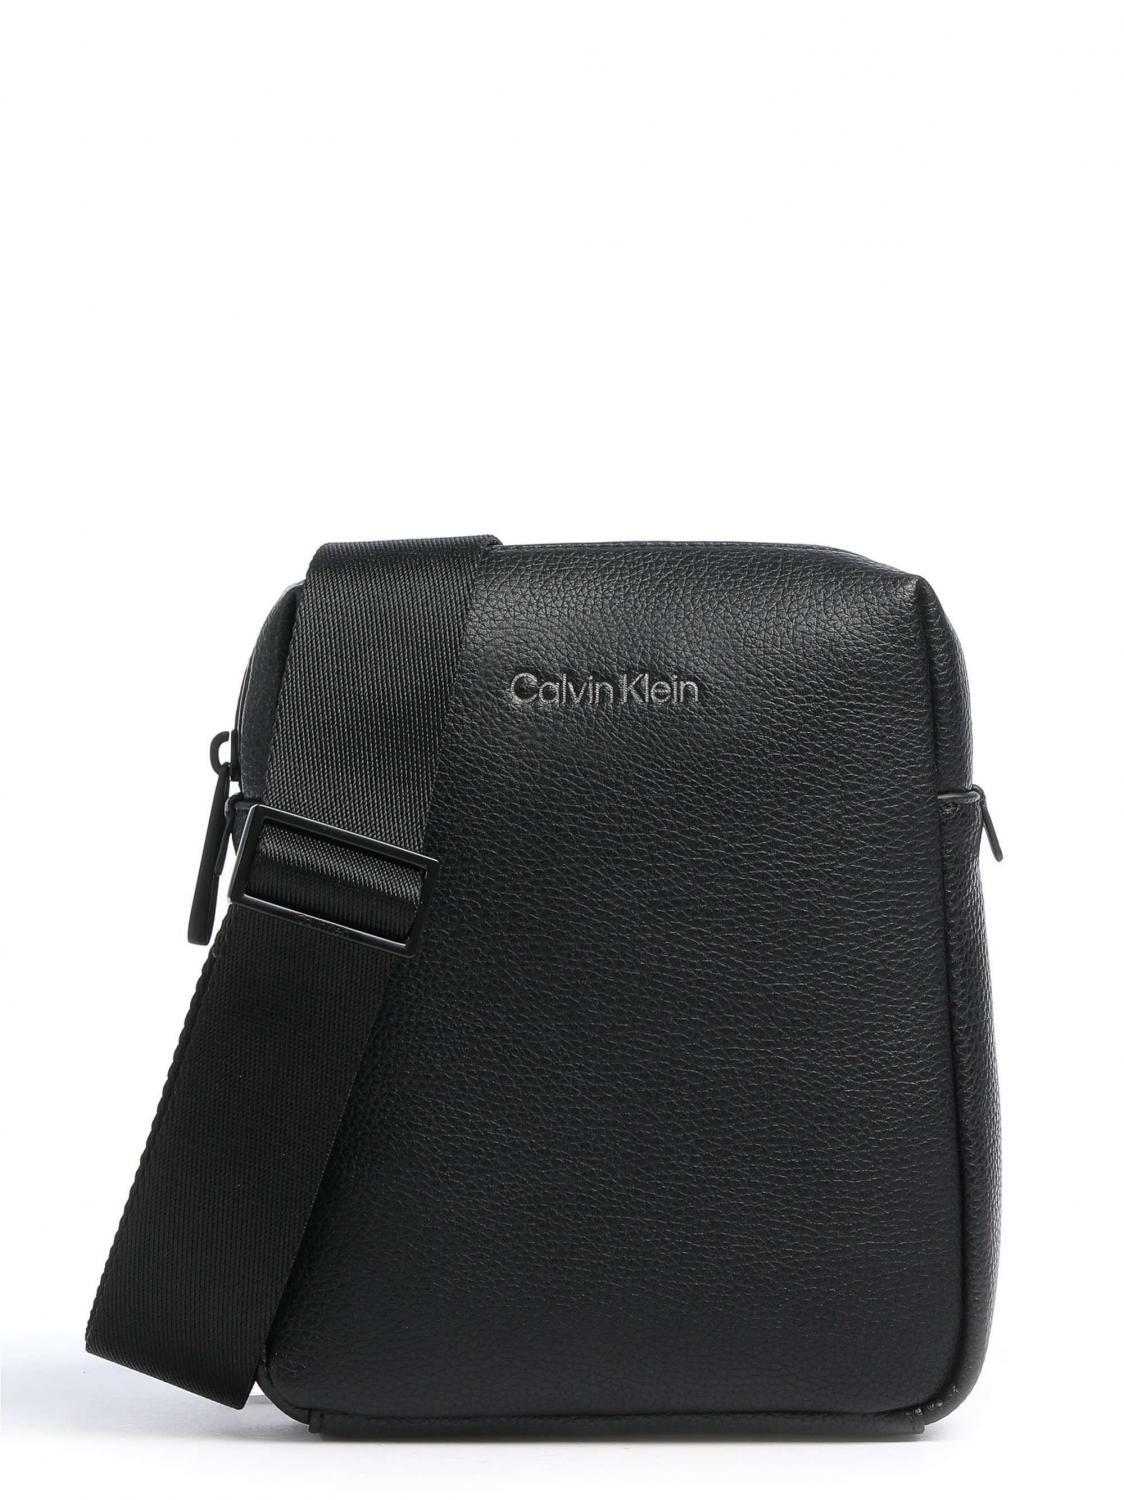 Calvin Klein Ck Must Bolso De Hombre Ckblack - ¡Compra A Precios De Outlet!